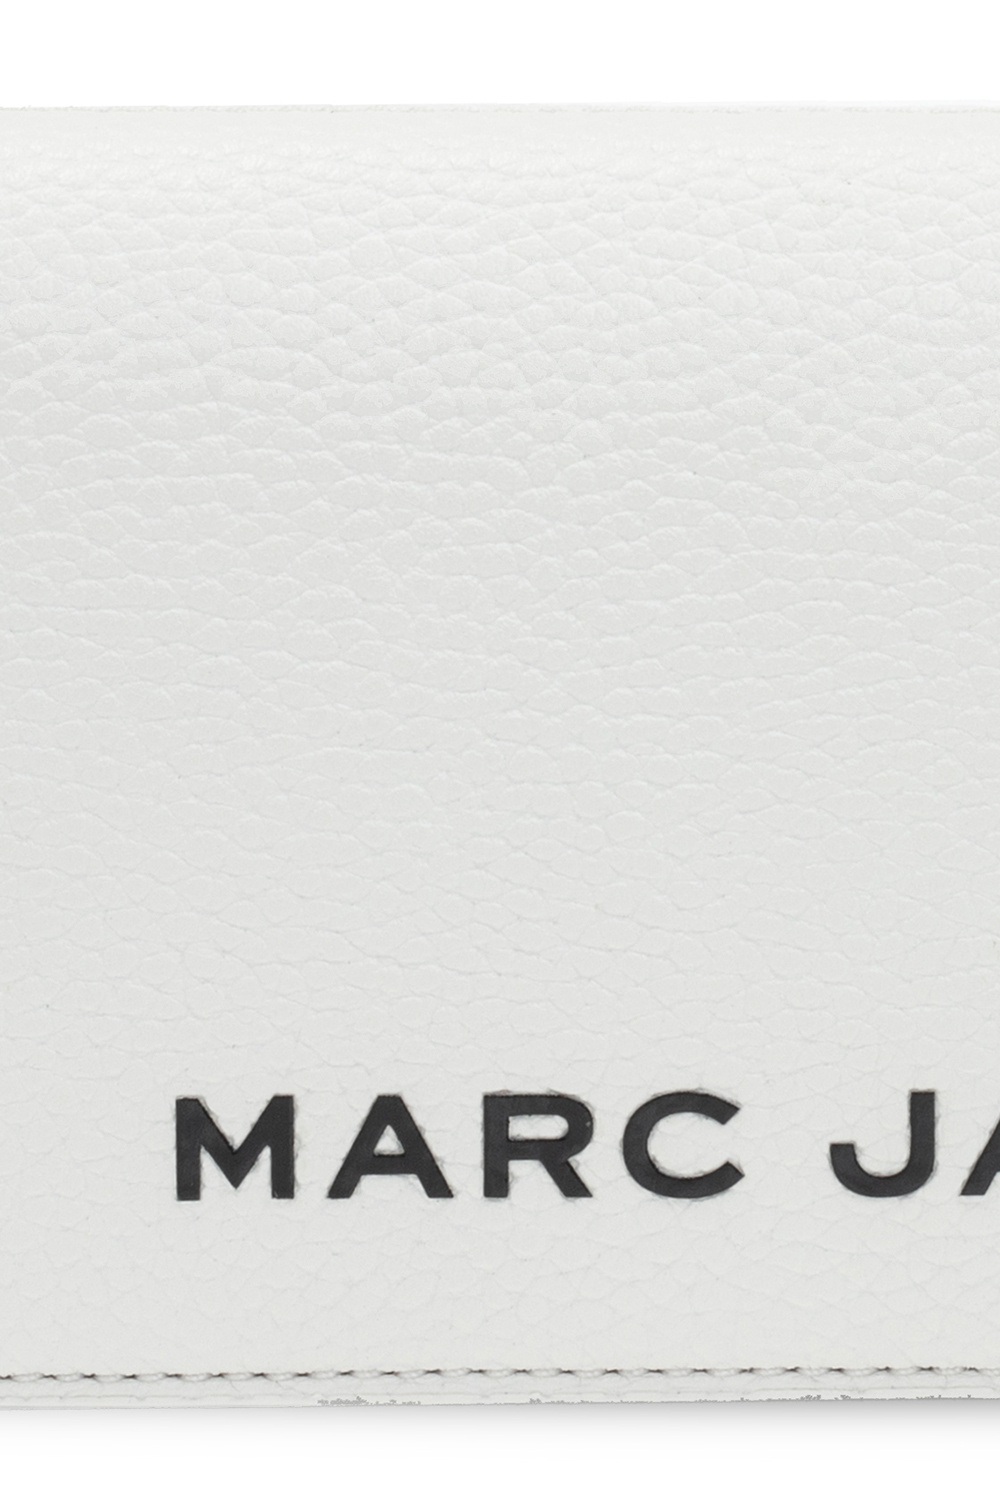 Marc Jacobs Женская сумка в стиле marc jacobs tote bag small blue